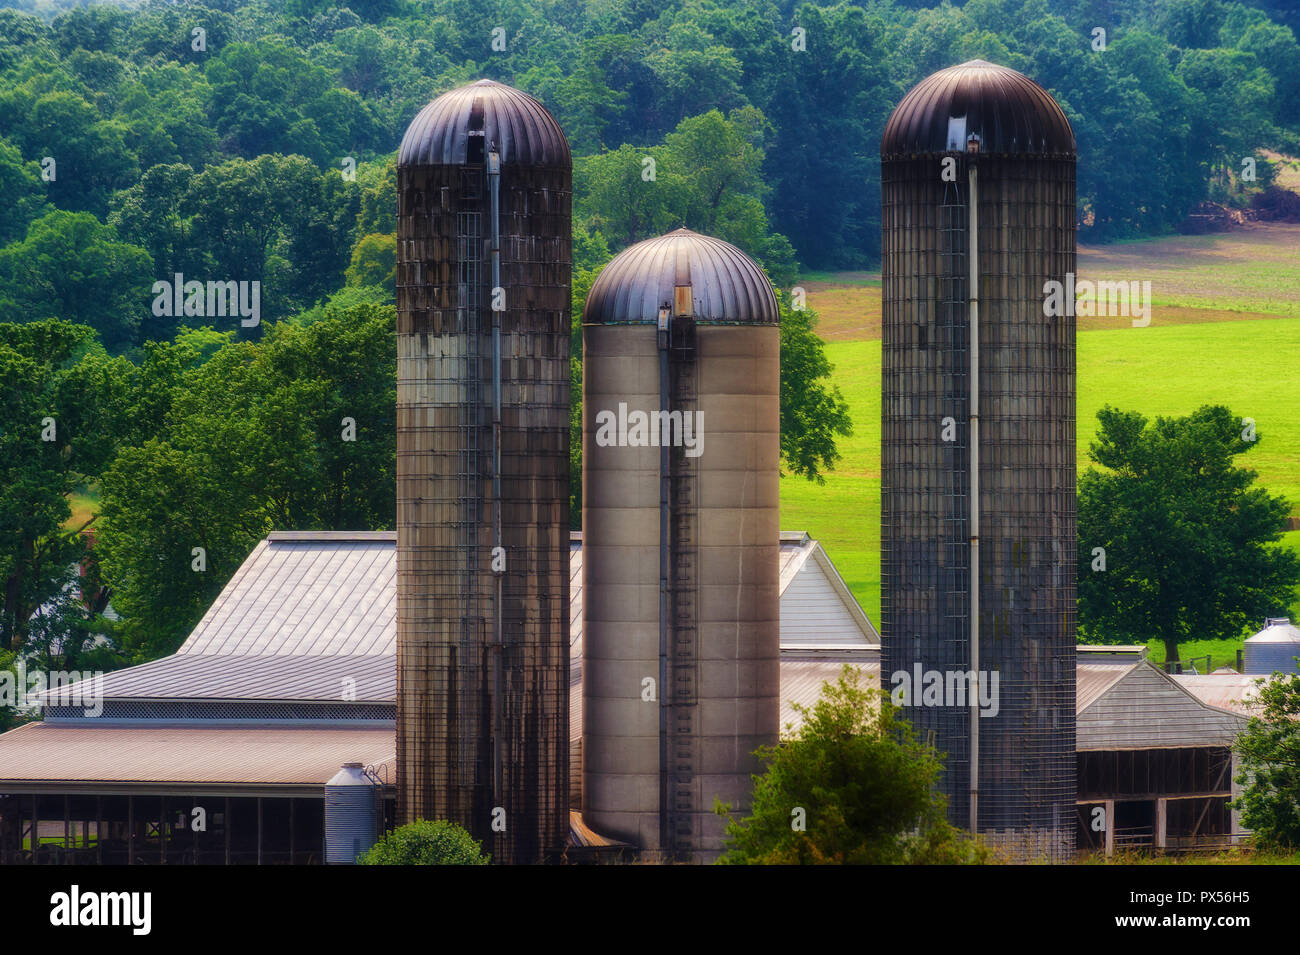 Huntington,West Virginia, USA - 4 juillet 2018 : Silos paysages de régions rurales de l'Ouest Virginia, USA. Banque D'Images